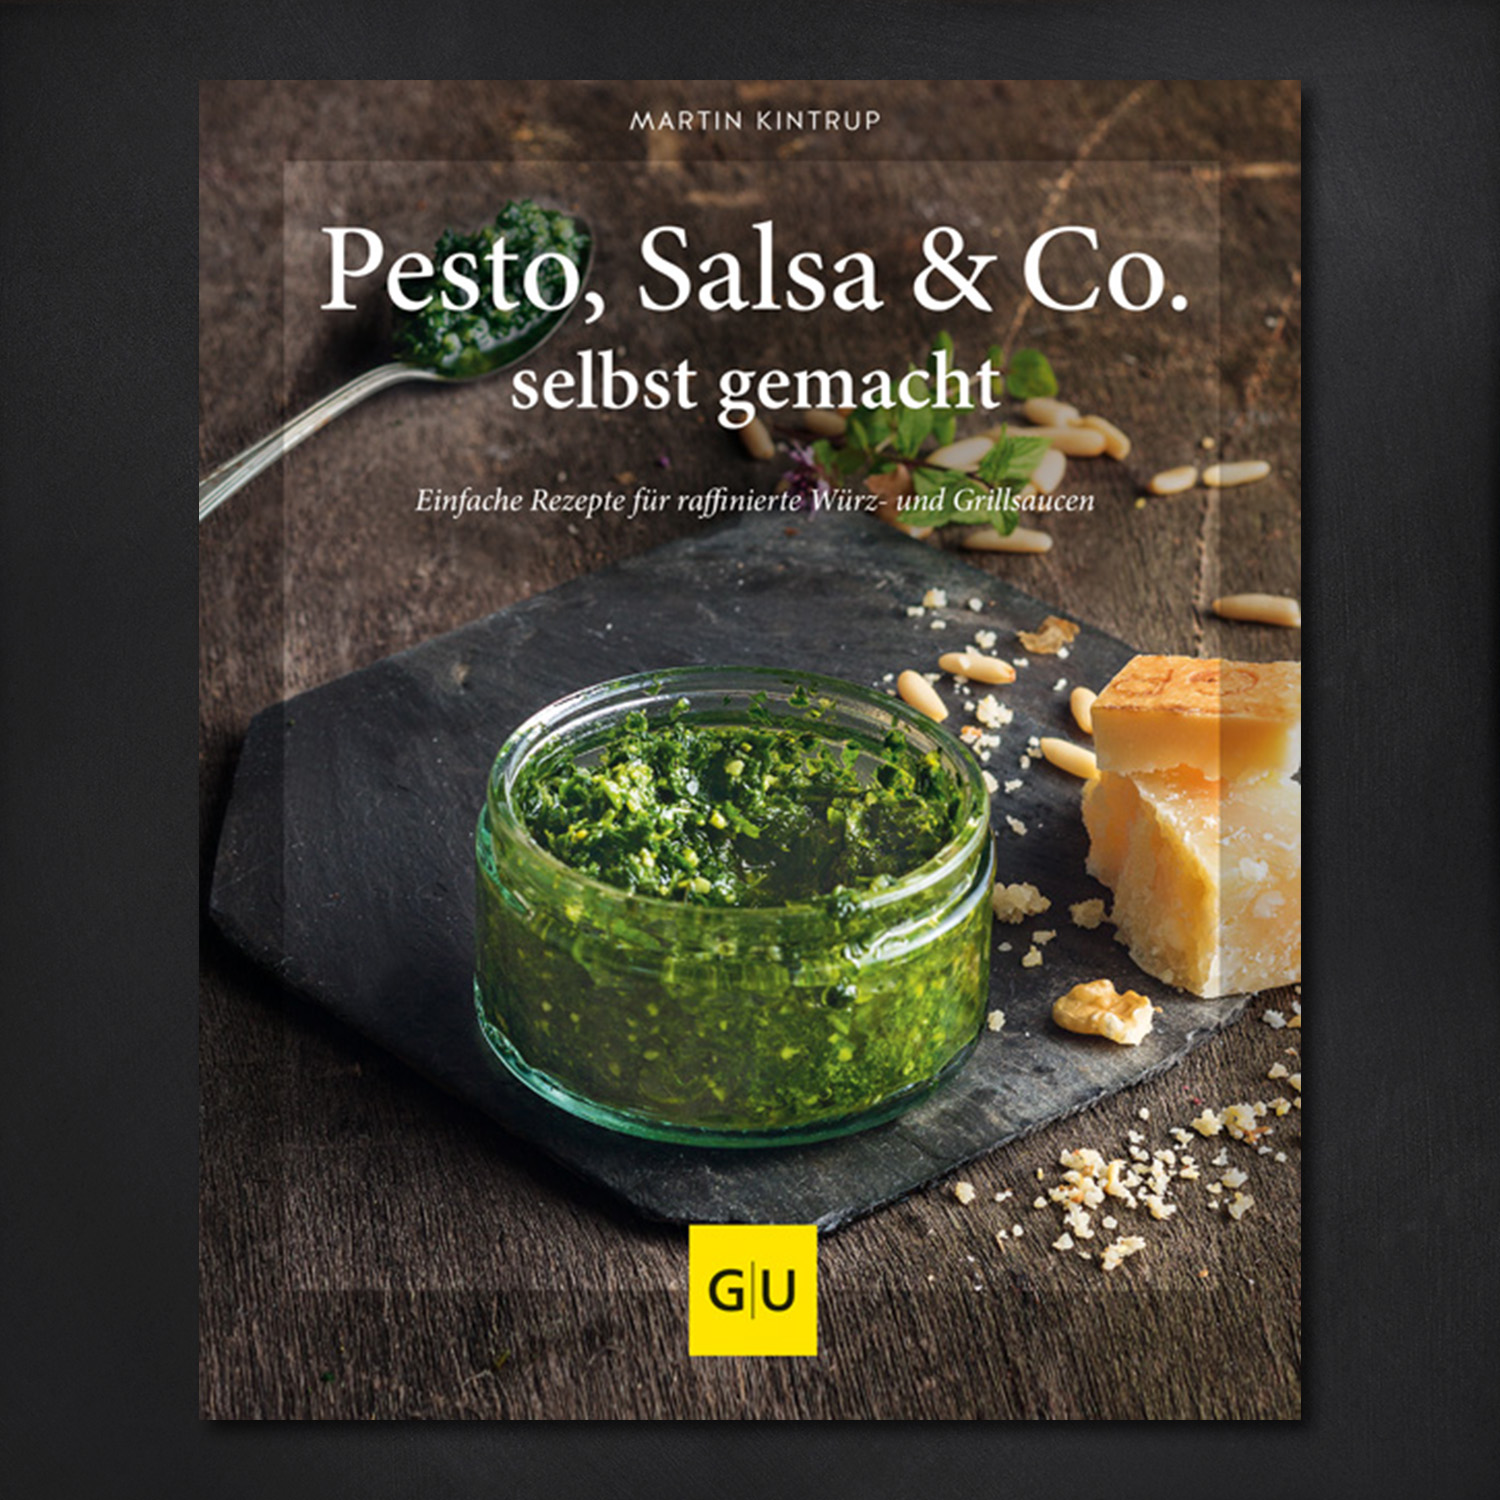 Pesto, Salsa & Co. selbstgemacht - Einfache Rezepte für Würz- und Grillsaucen / Martin Kintrup